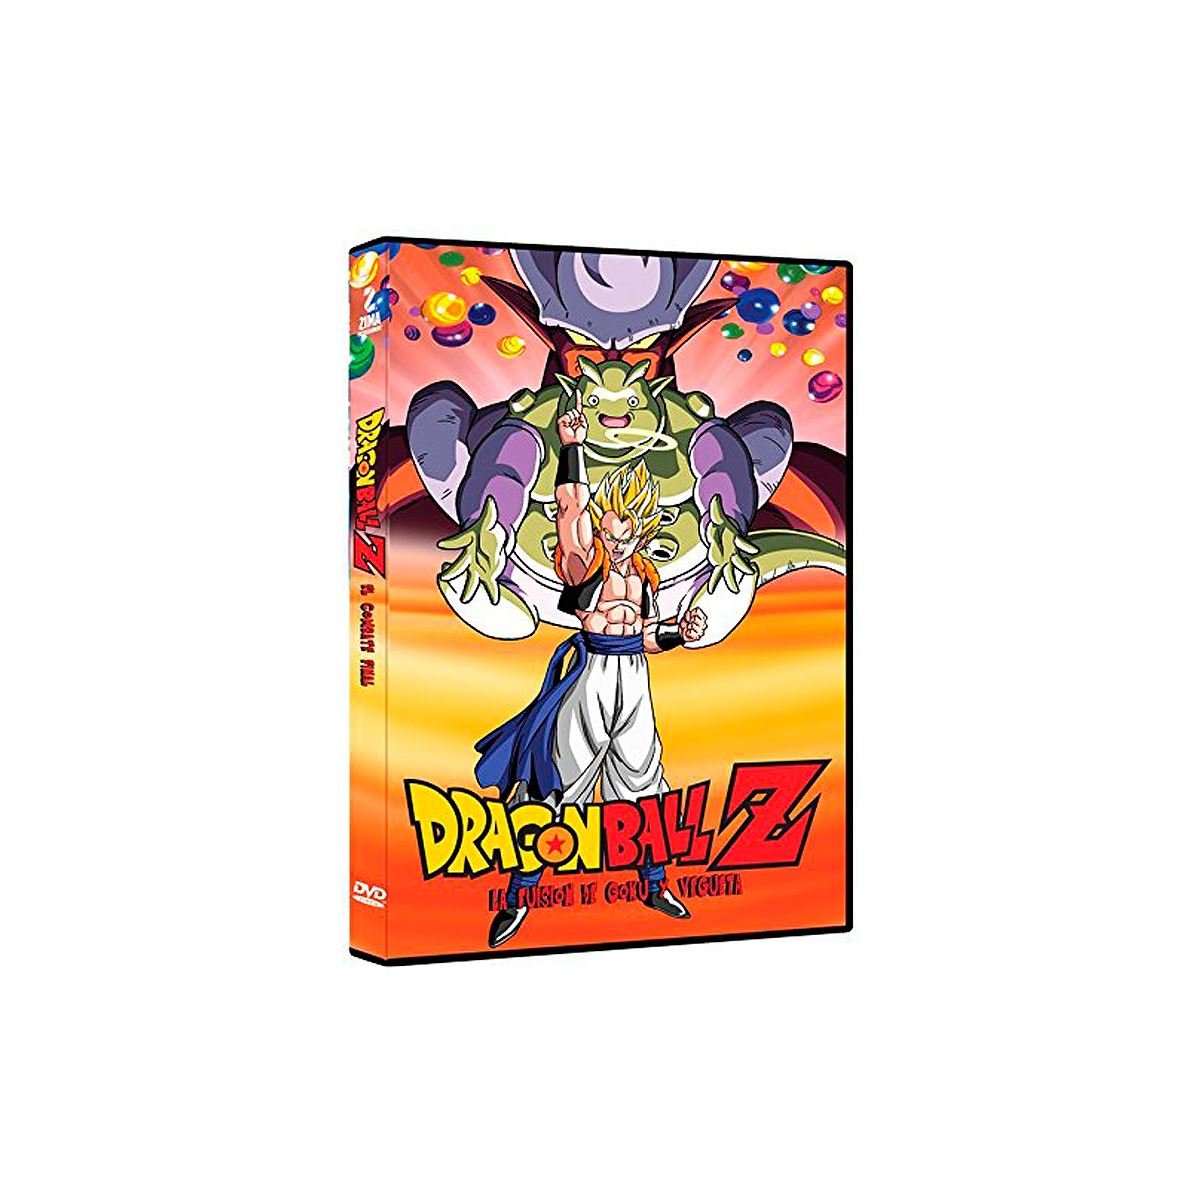 Dvd Dragon Ball Z la Fusion de Goku y Vegue